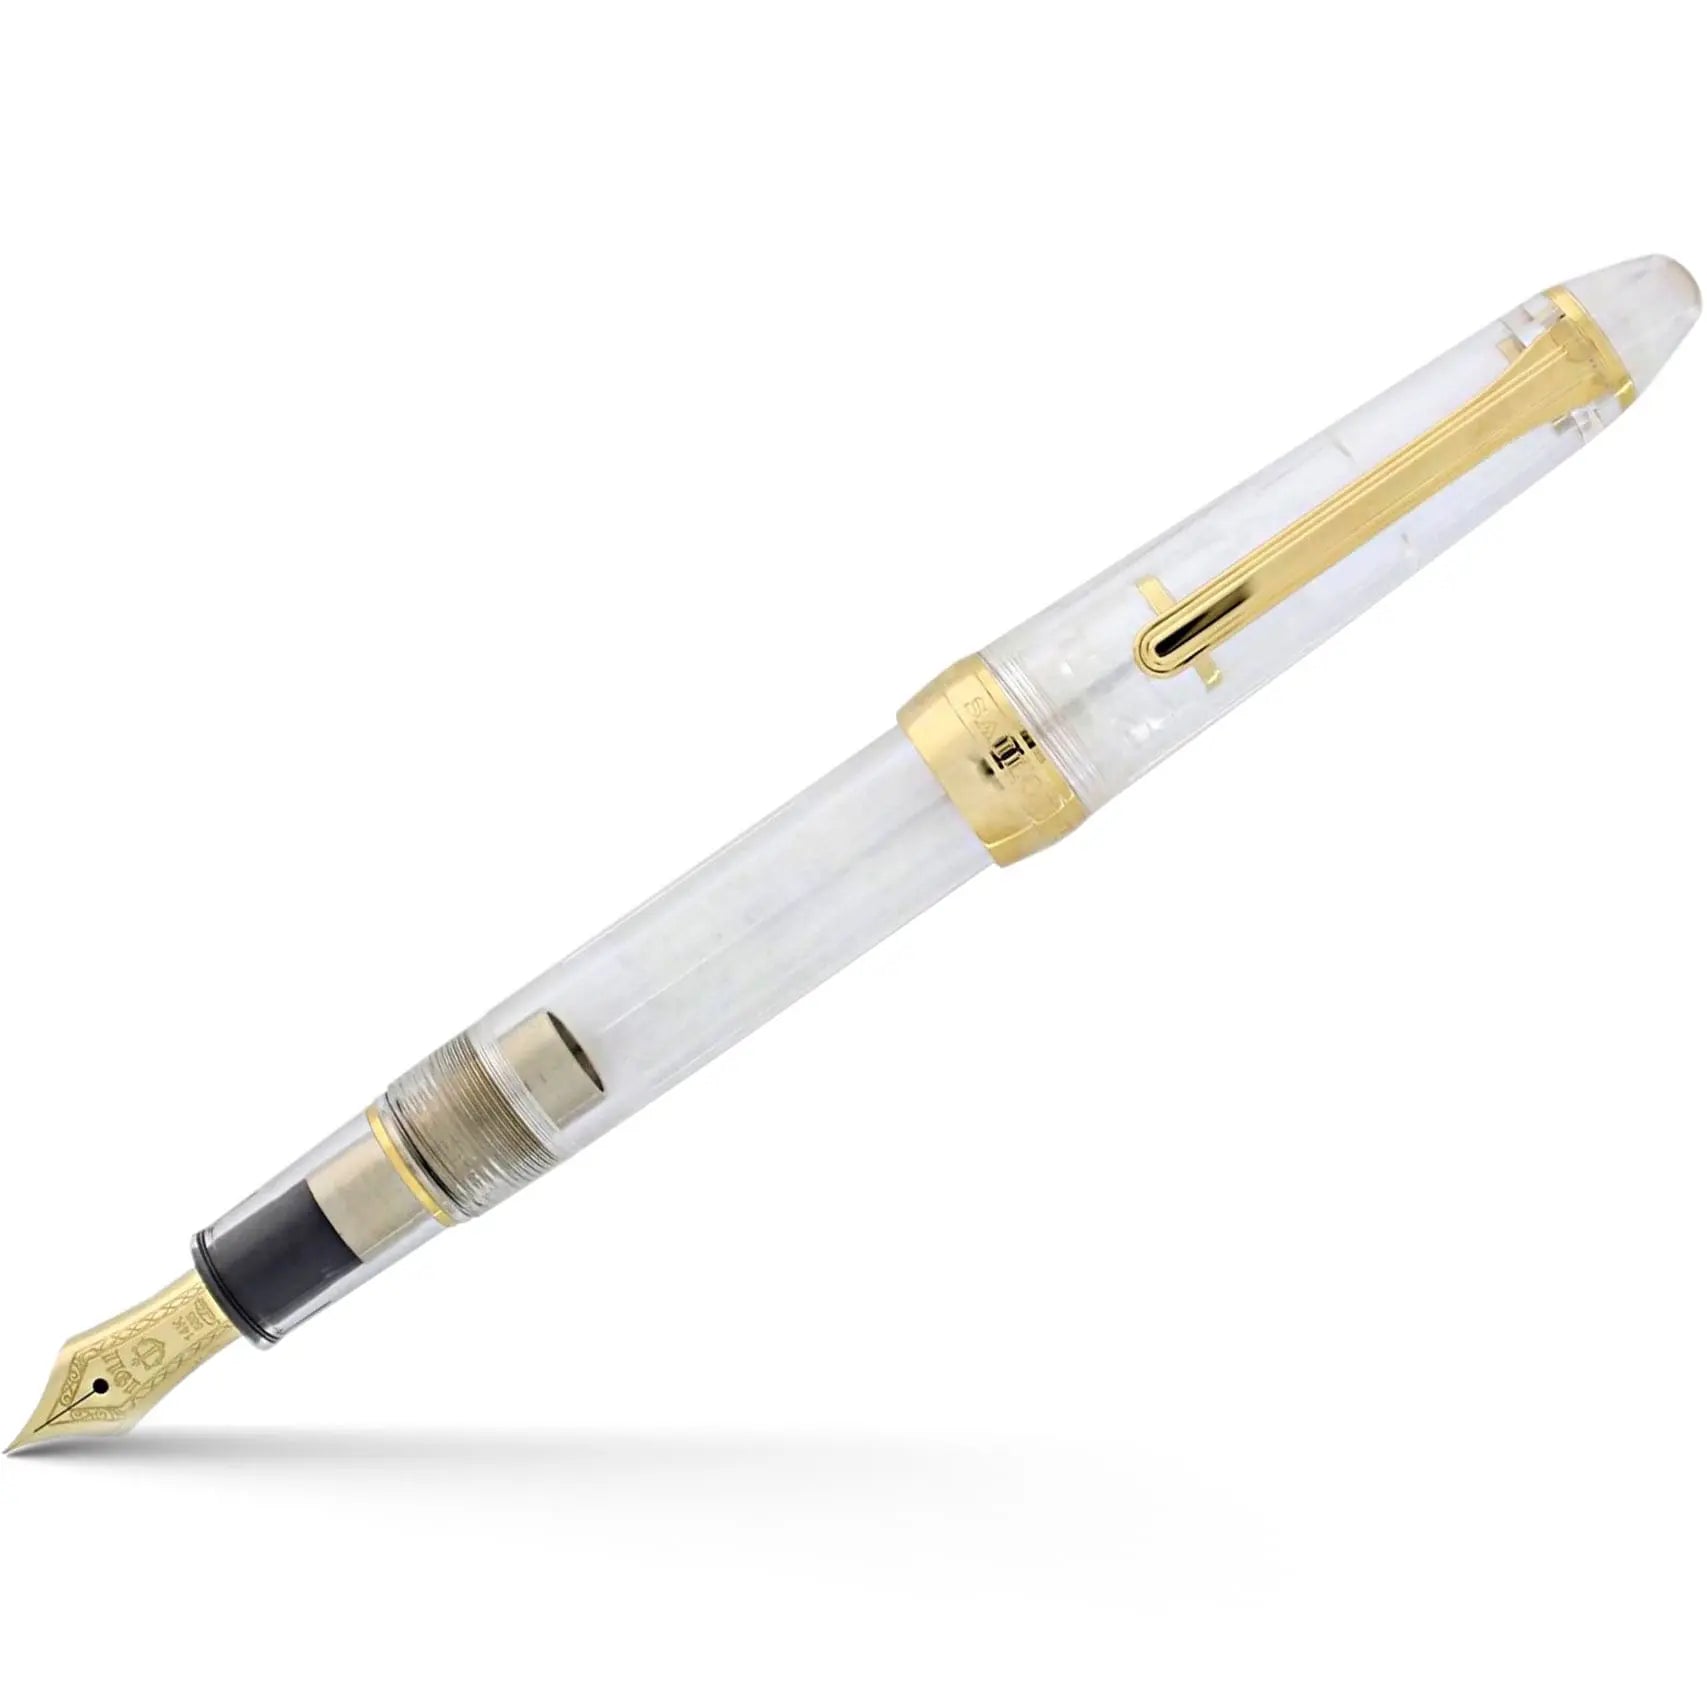 Sailor 1911S Fountain pen - Transparent Demo - Gold Trim - 14k Nib-Pen Boutique Ltd